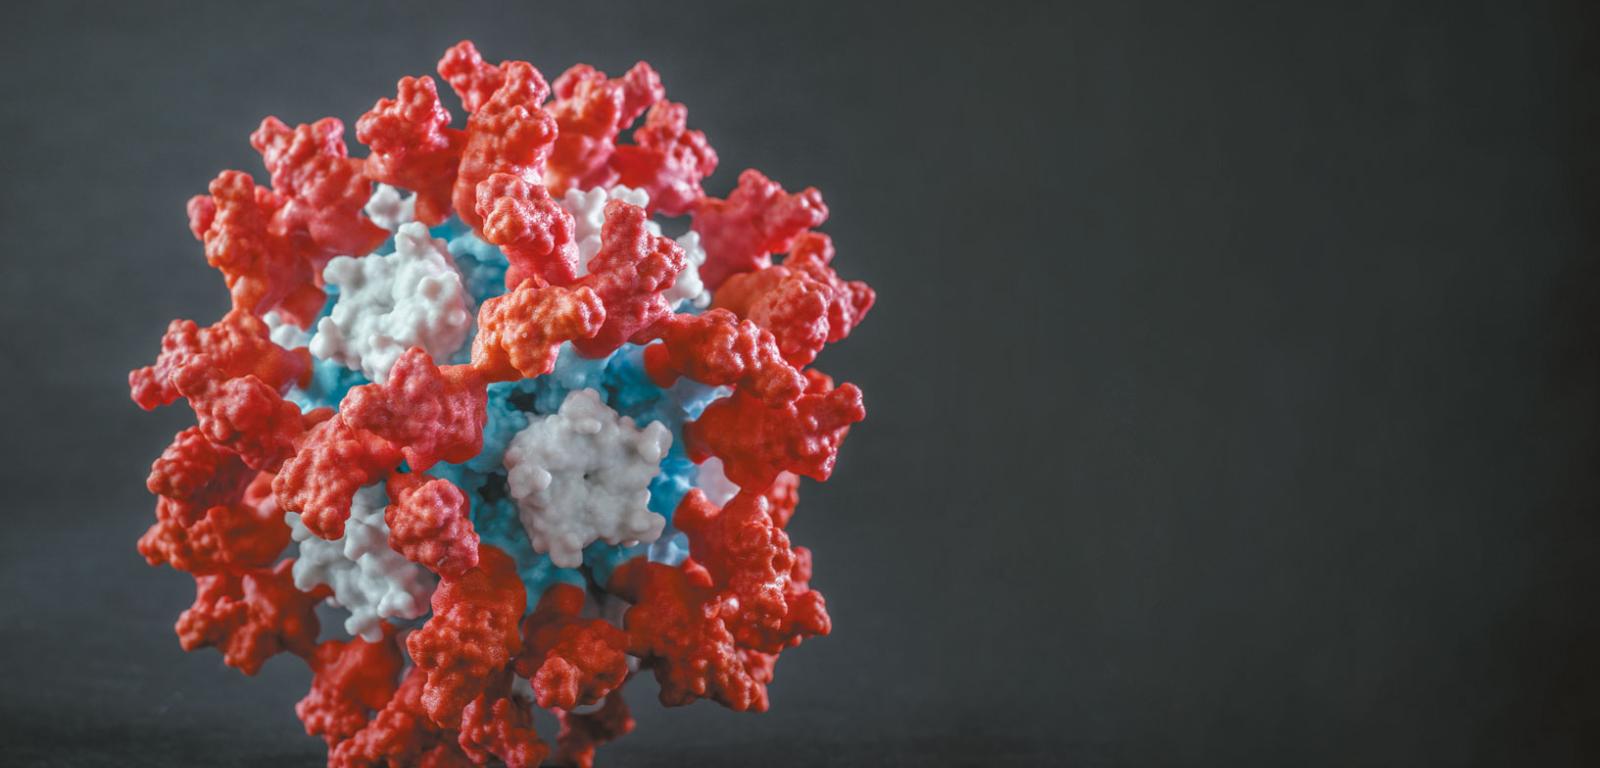 Nowa szczepionka przeciwko Covid-19, tu w formie trójwymiarowego modelu, powstała na bazie nanocząstek syntetycznego białka, zaprojektowanych w taki sposób, aby wyzwalały silną ochronę immunologiczną.